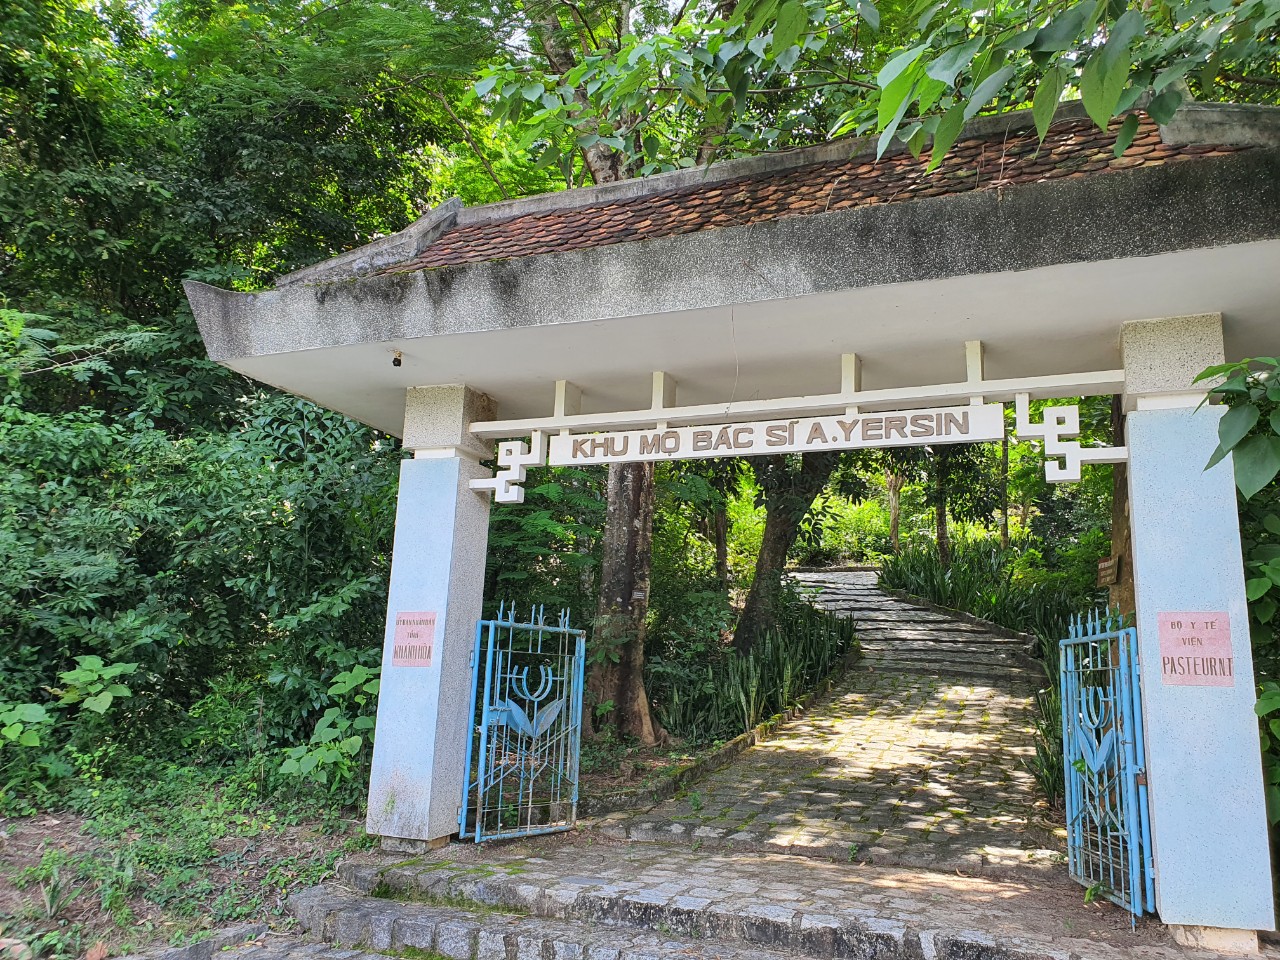 Khu di tích mộ bác sĩ Yersin ở Khánh Hòa - Ảnh 1.